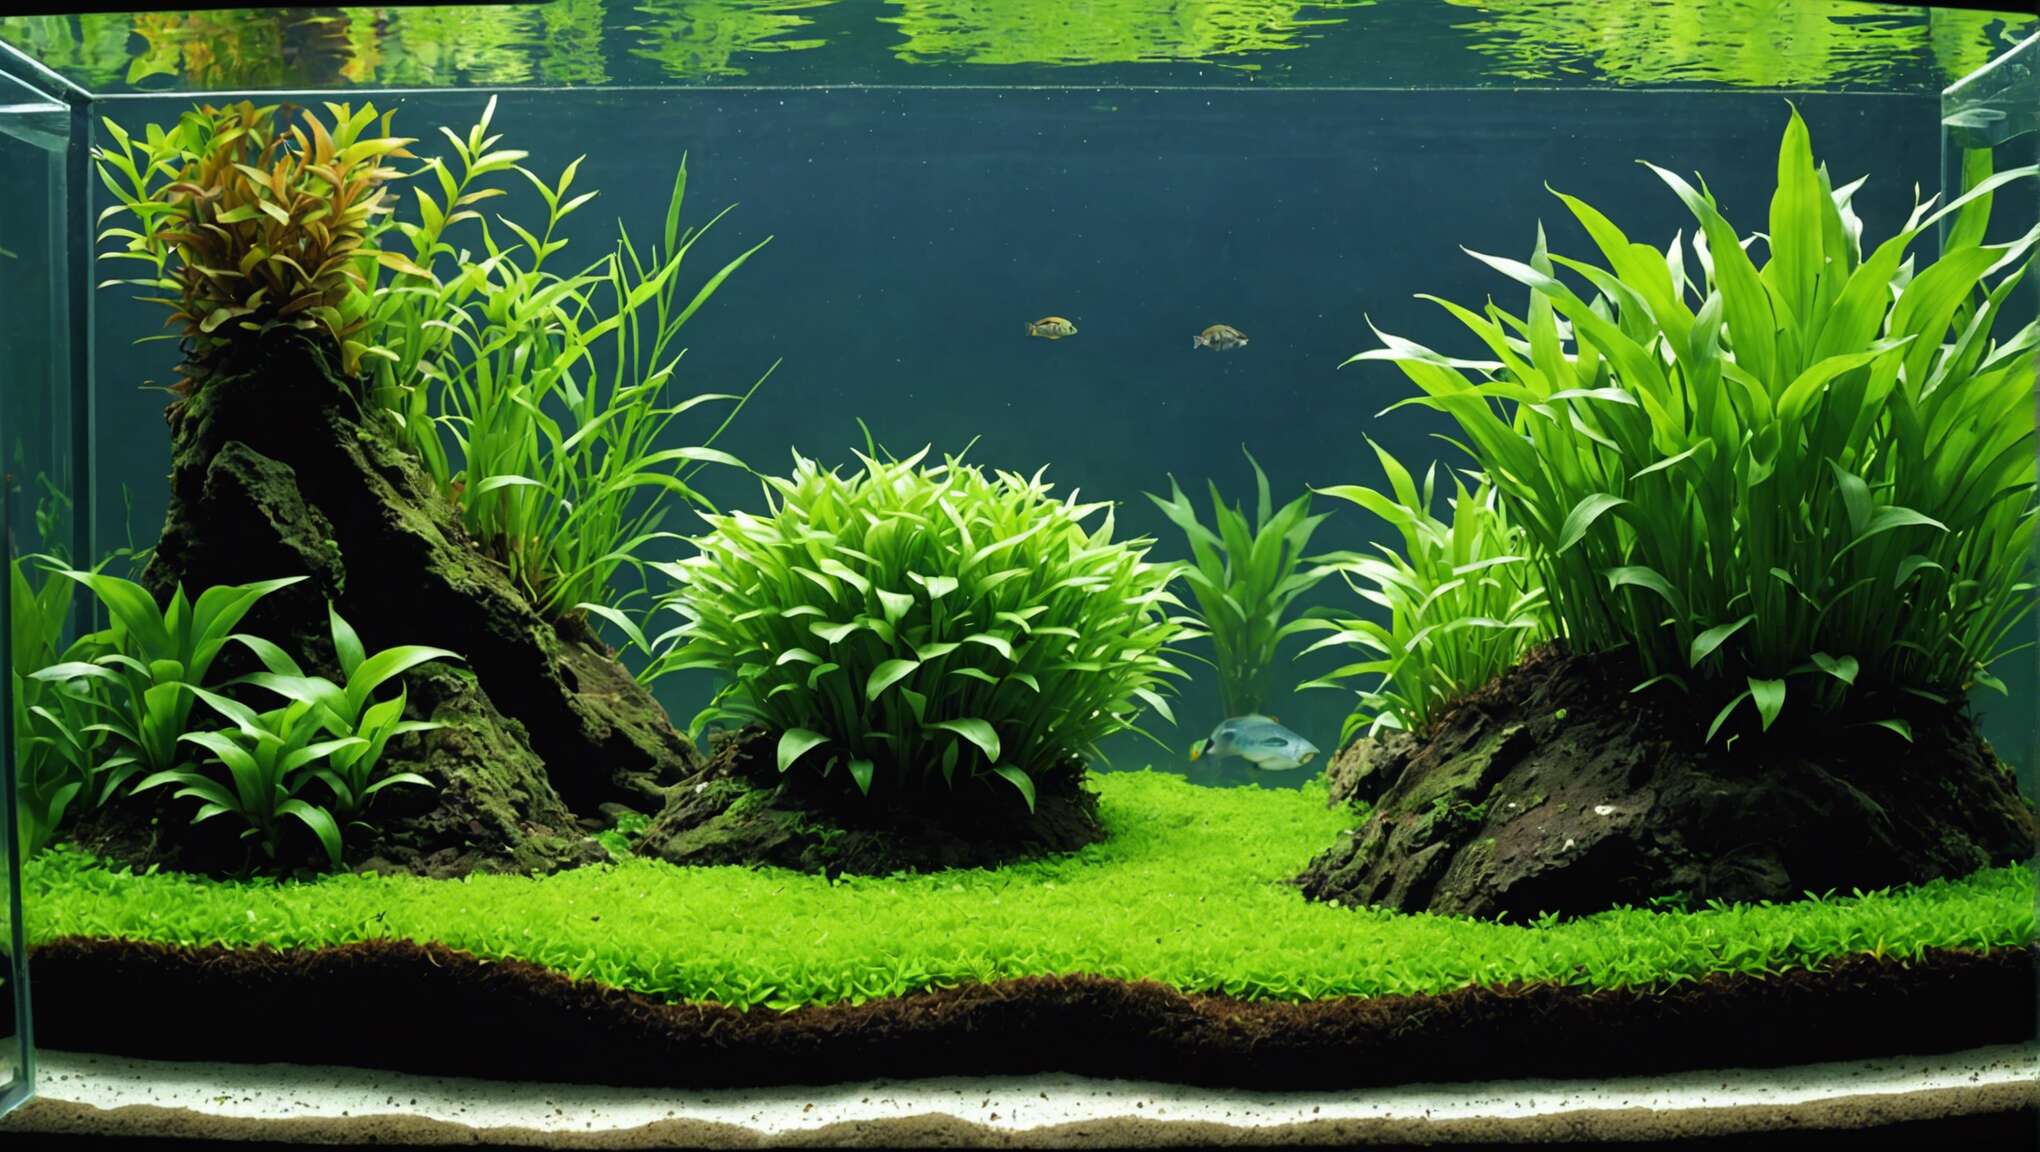 Réussir l'acclimatation des plantes au sol de votre aquarium : étapes clés